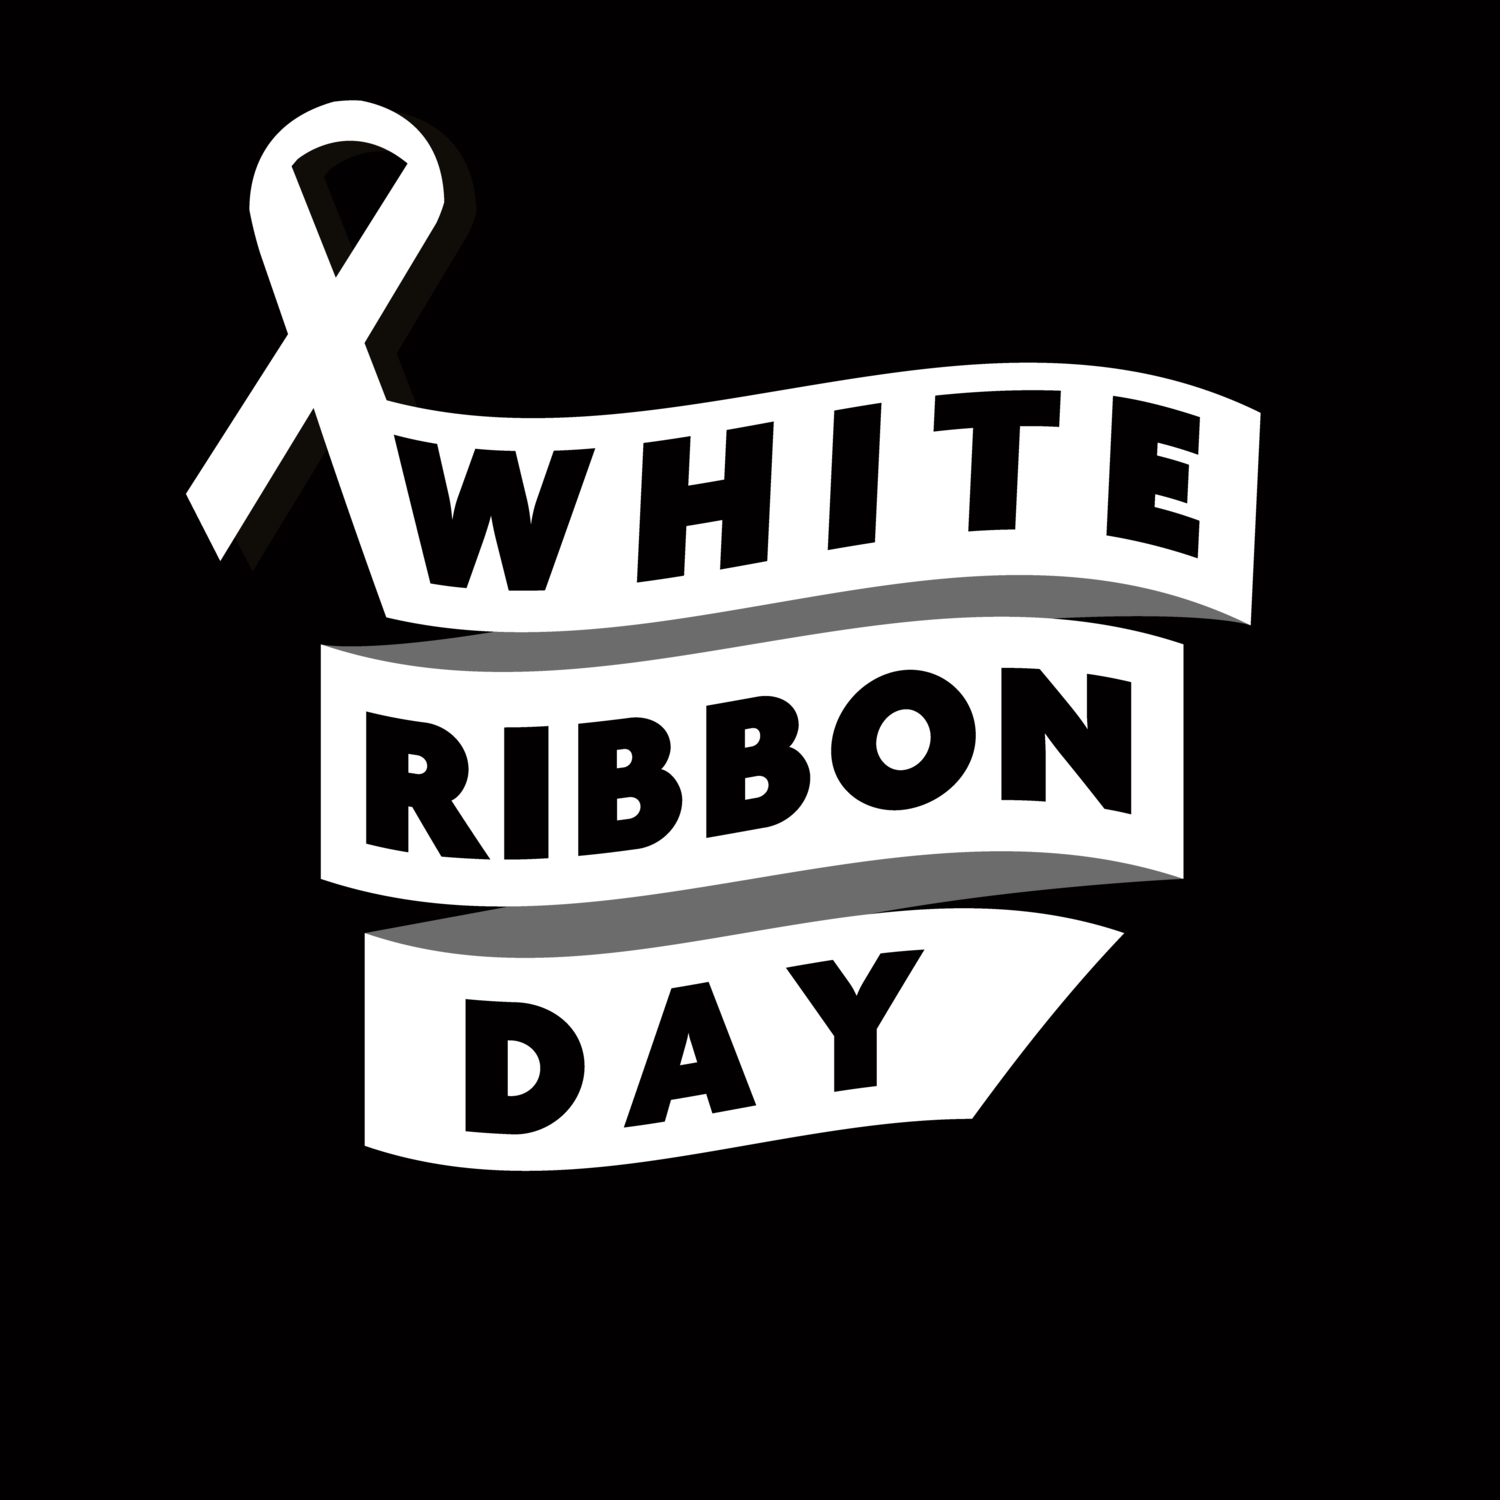 White ribbon day logo